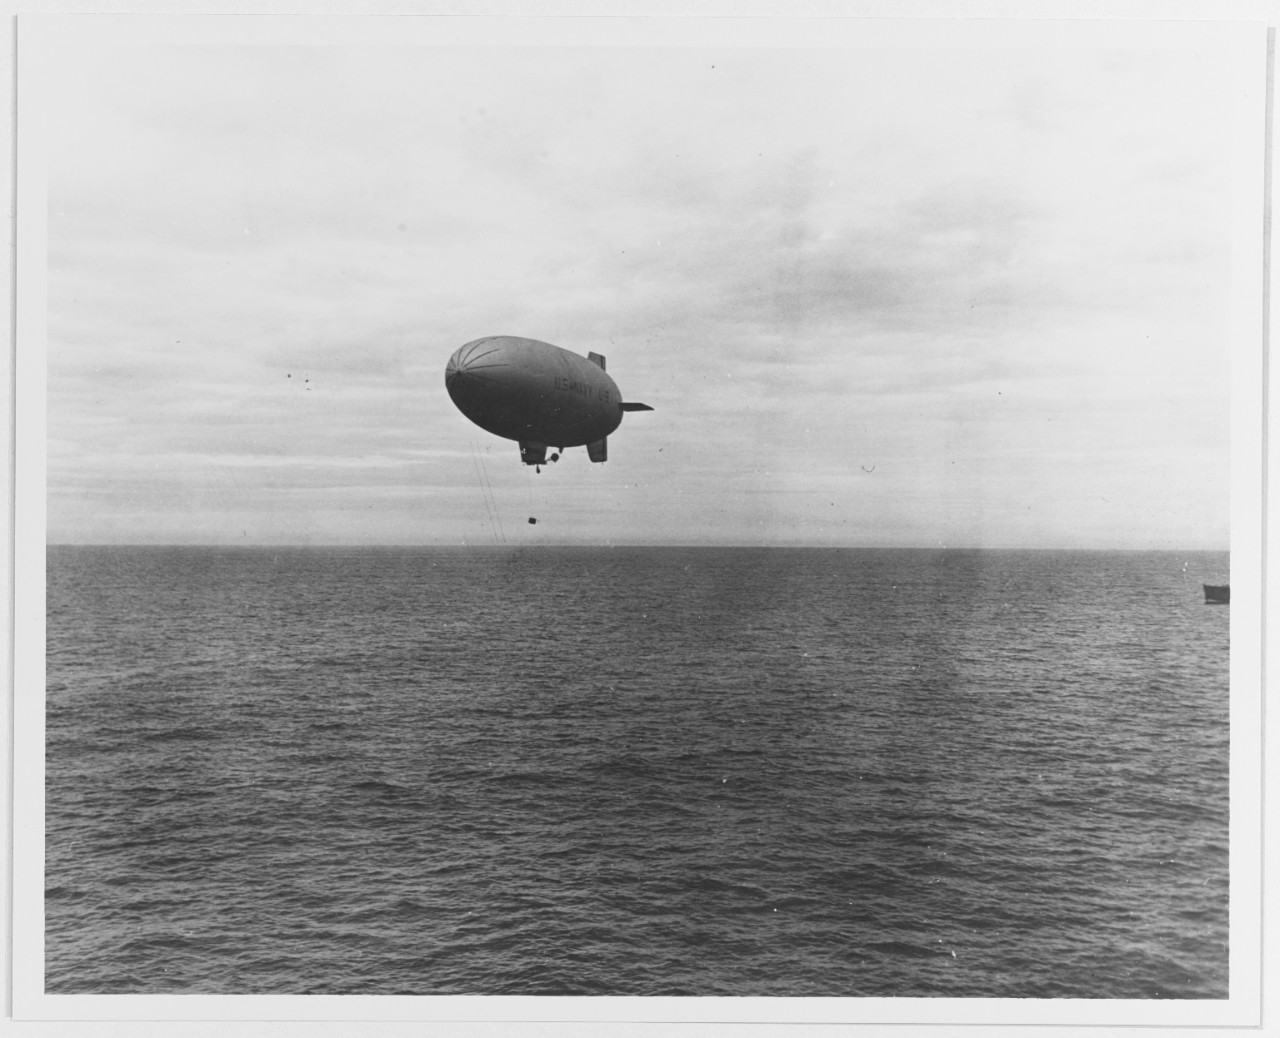 Photo #: NH 53288  Doolittle Raid on Japan, 18 April 1942